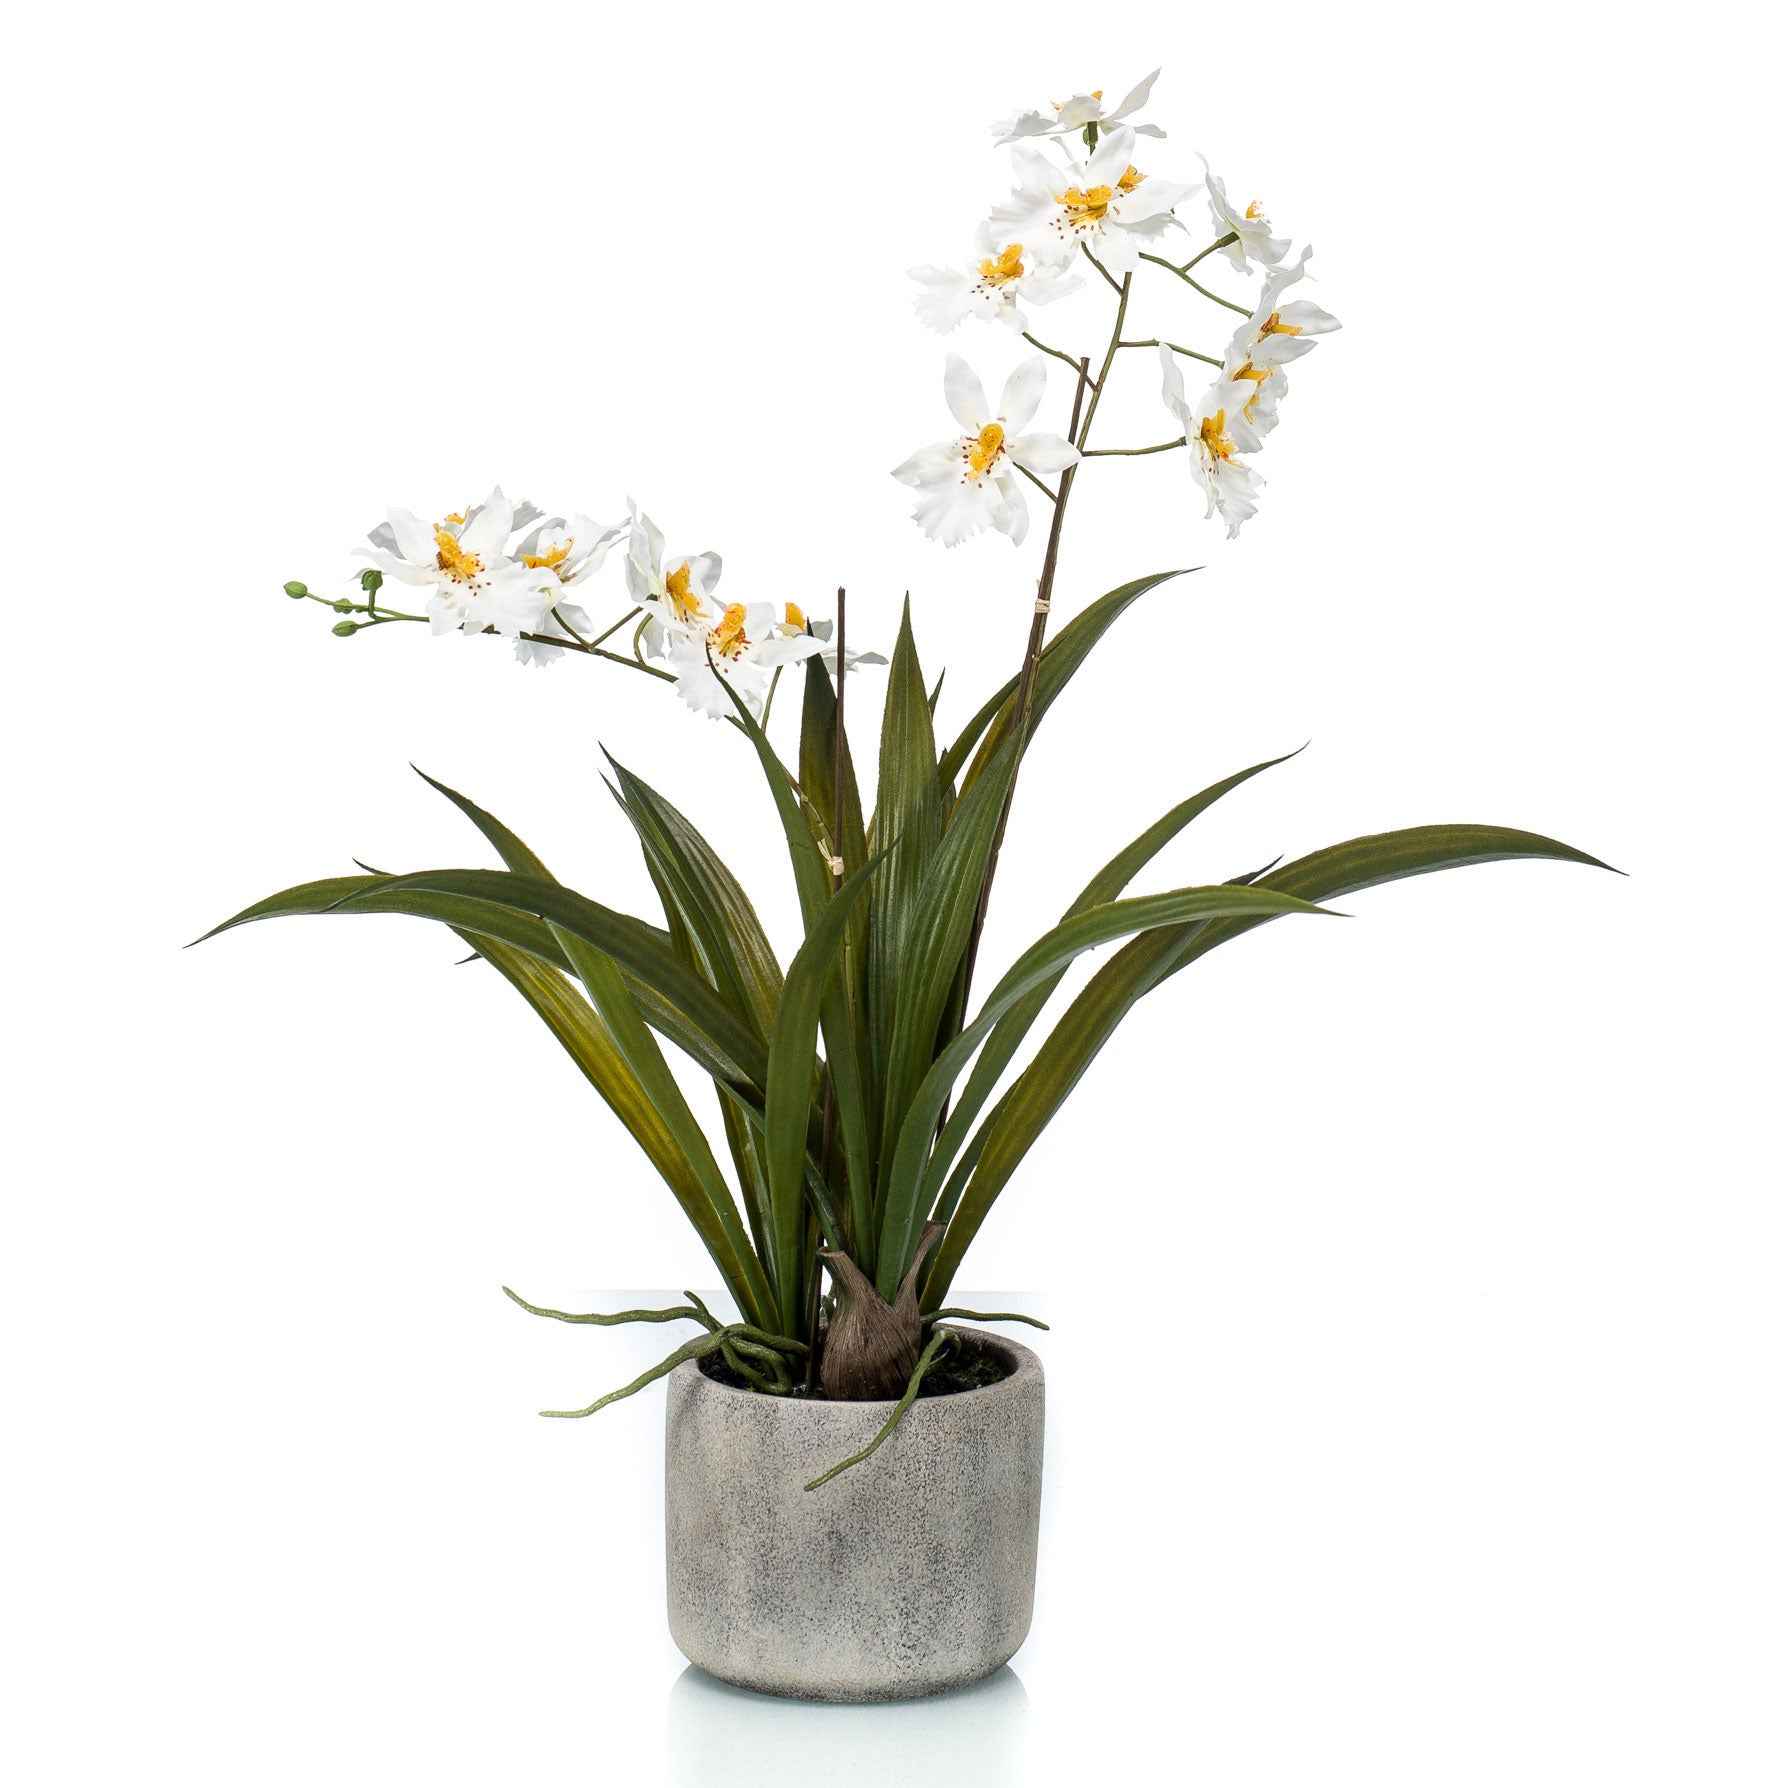 Kunstplant Orchidee Oncidium wit-geel incl. keramische sierpot - Alle kunstplanten